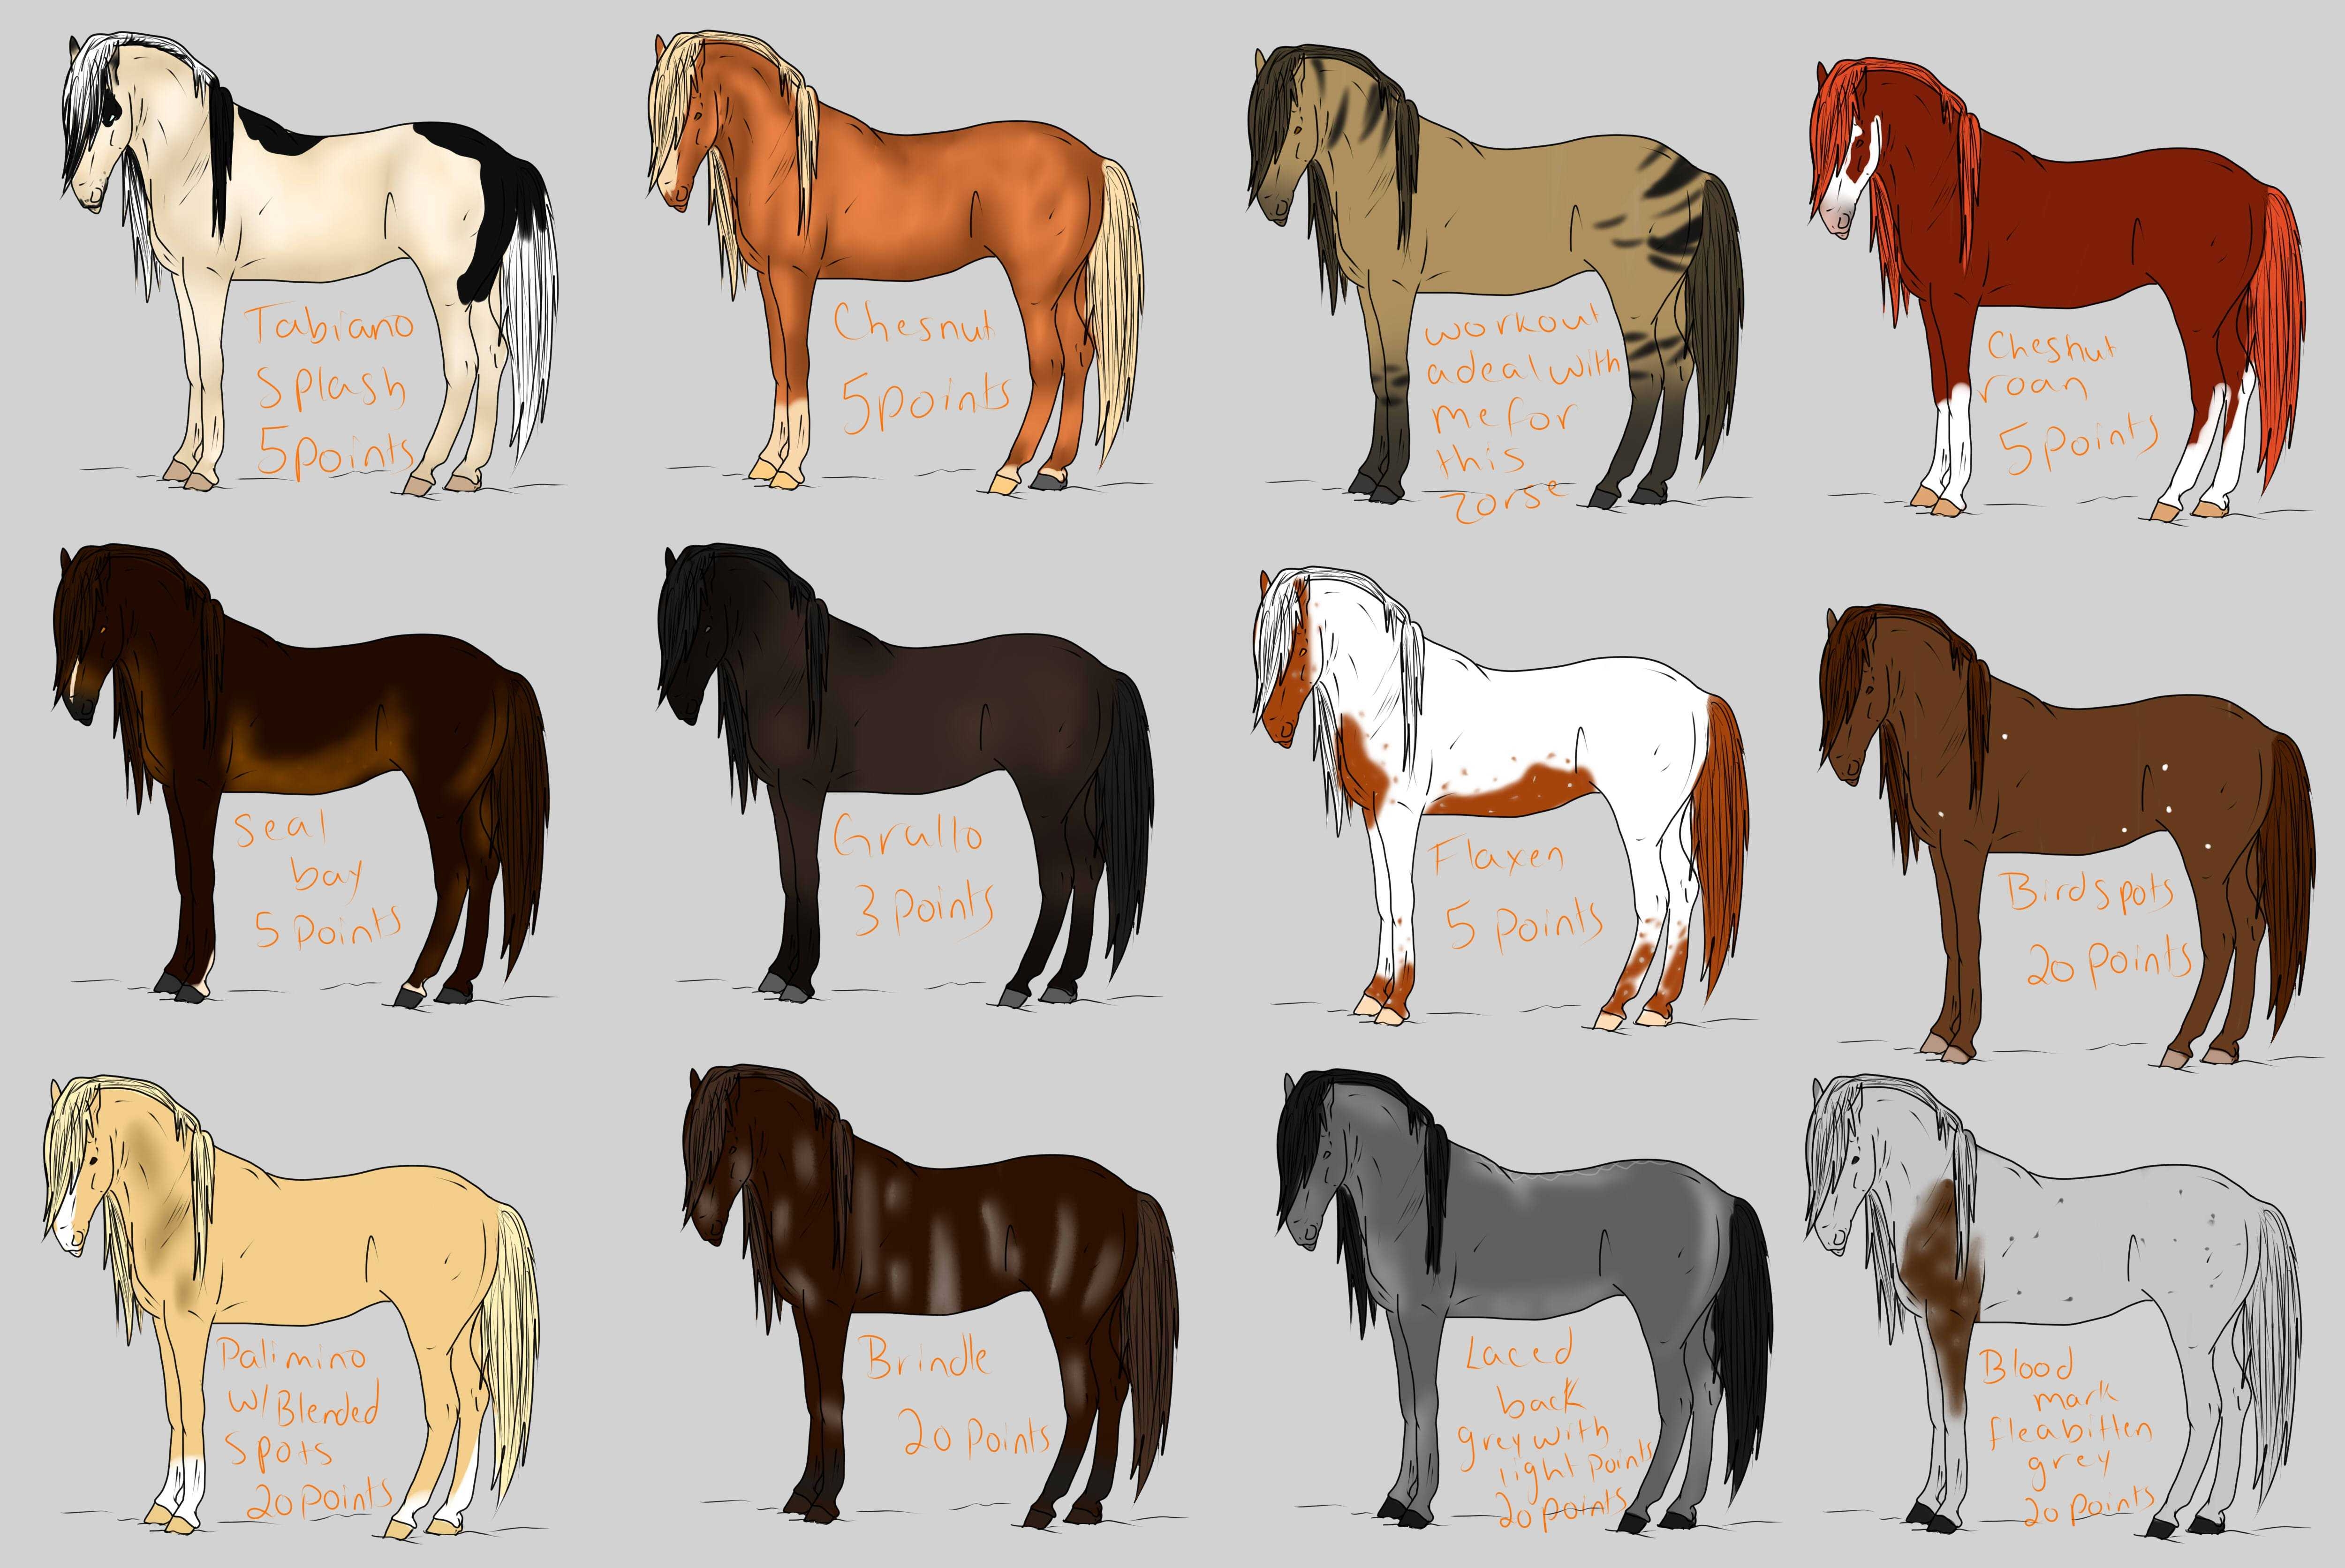 Породы лошадей рисунок